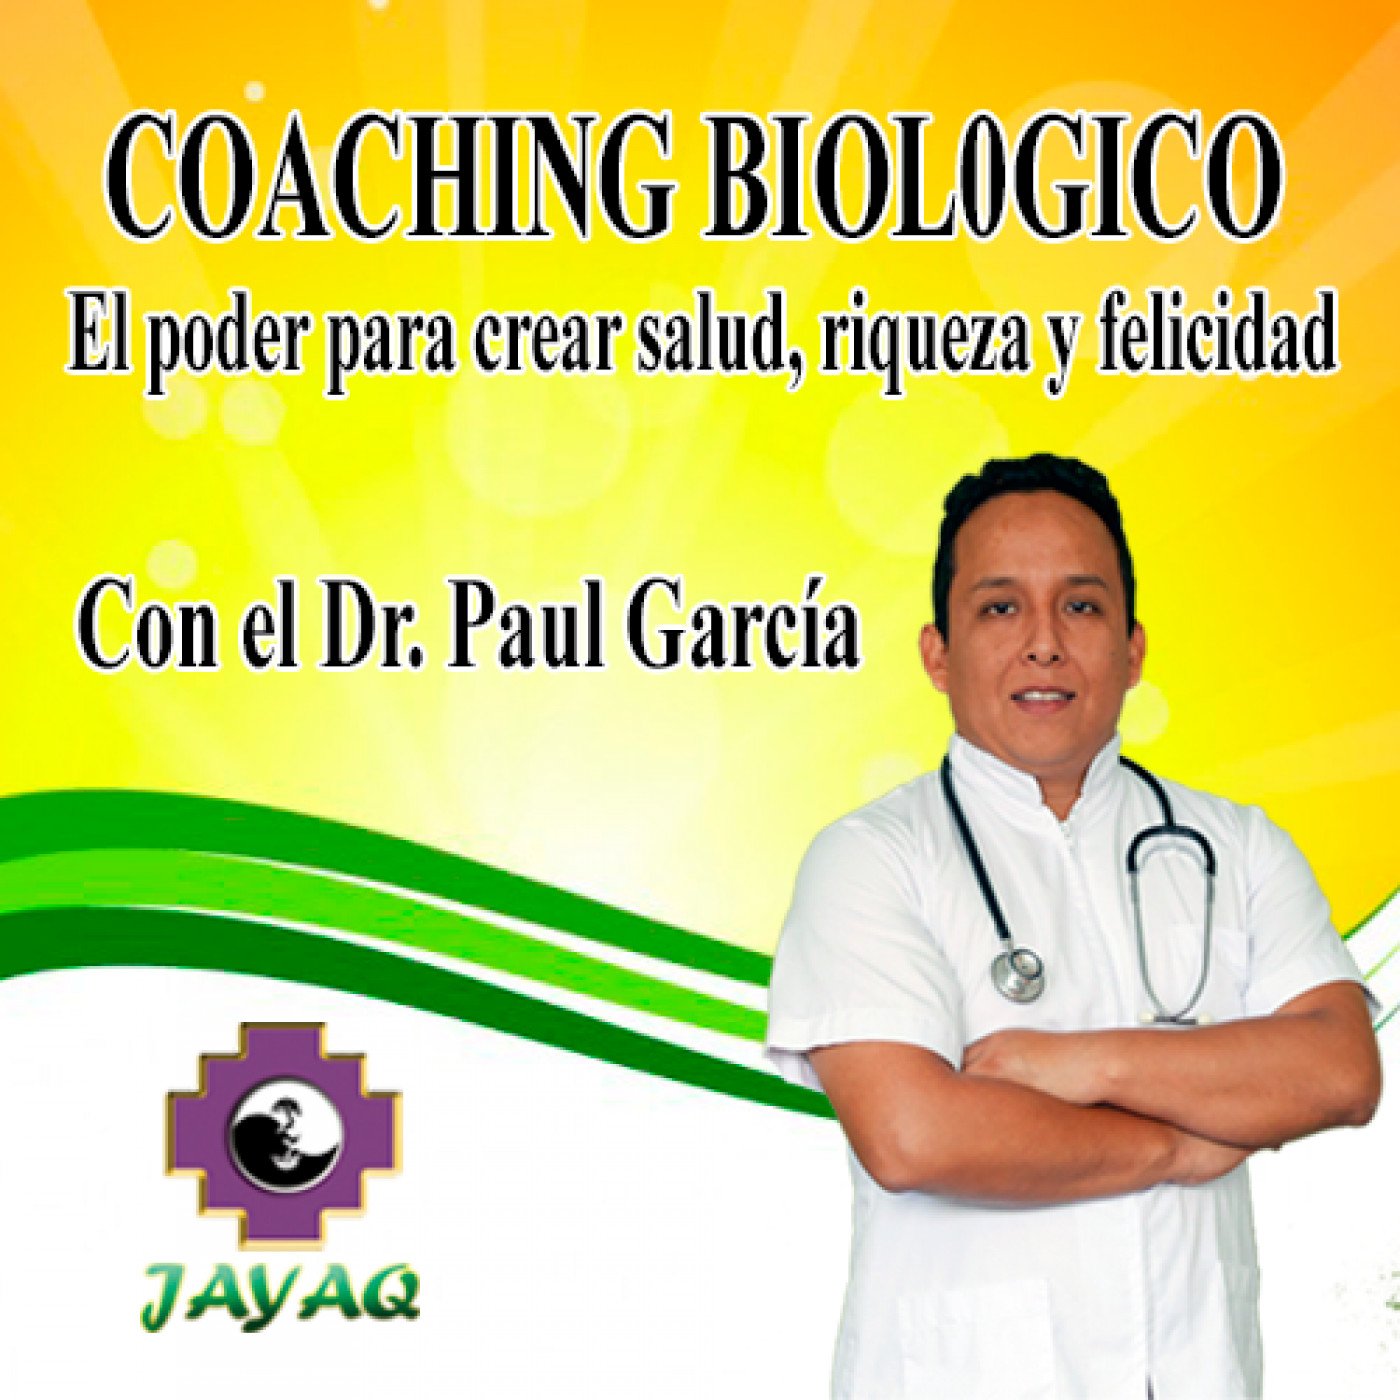 COACHING BIOLOGICO CON EL DR PAUL GARCIA